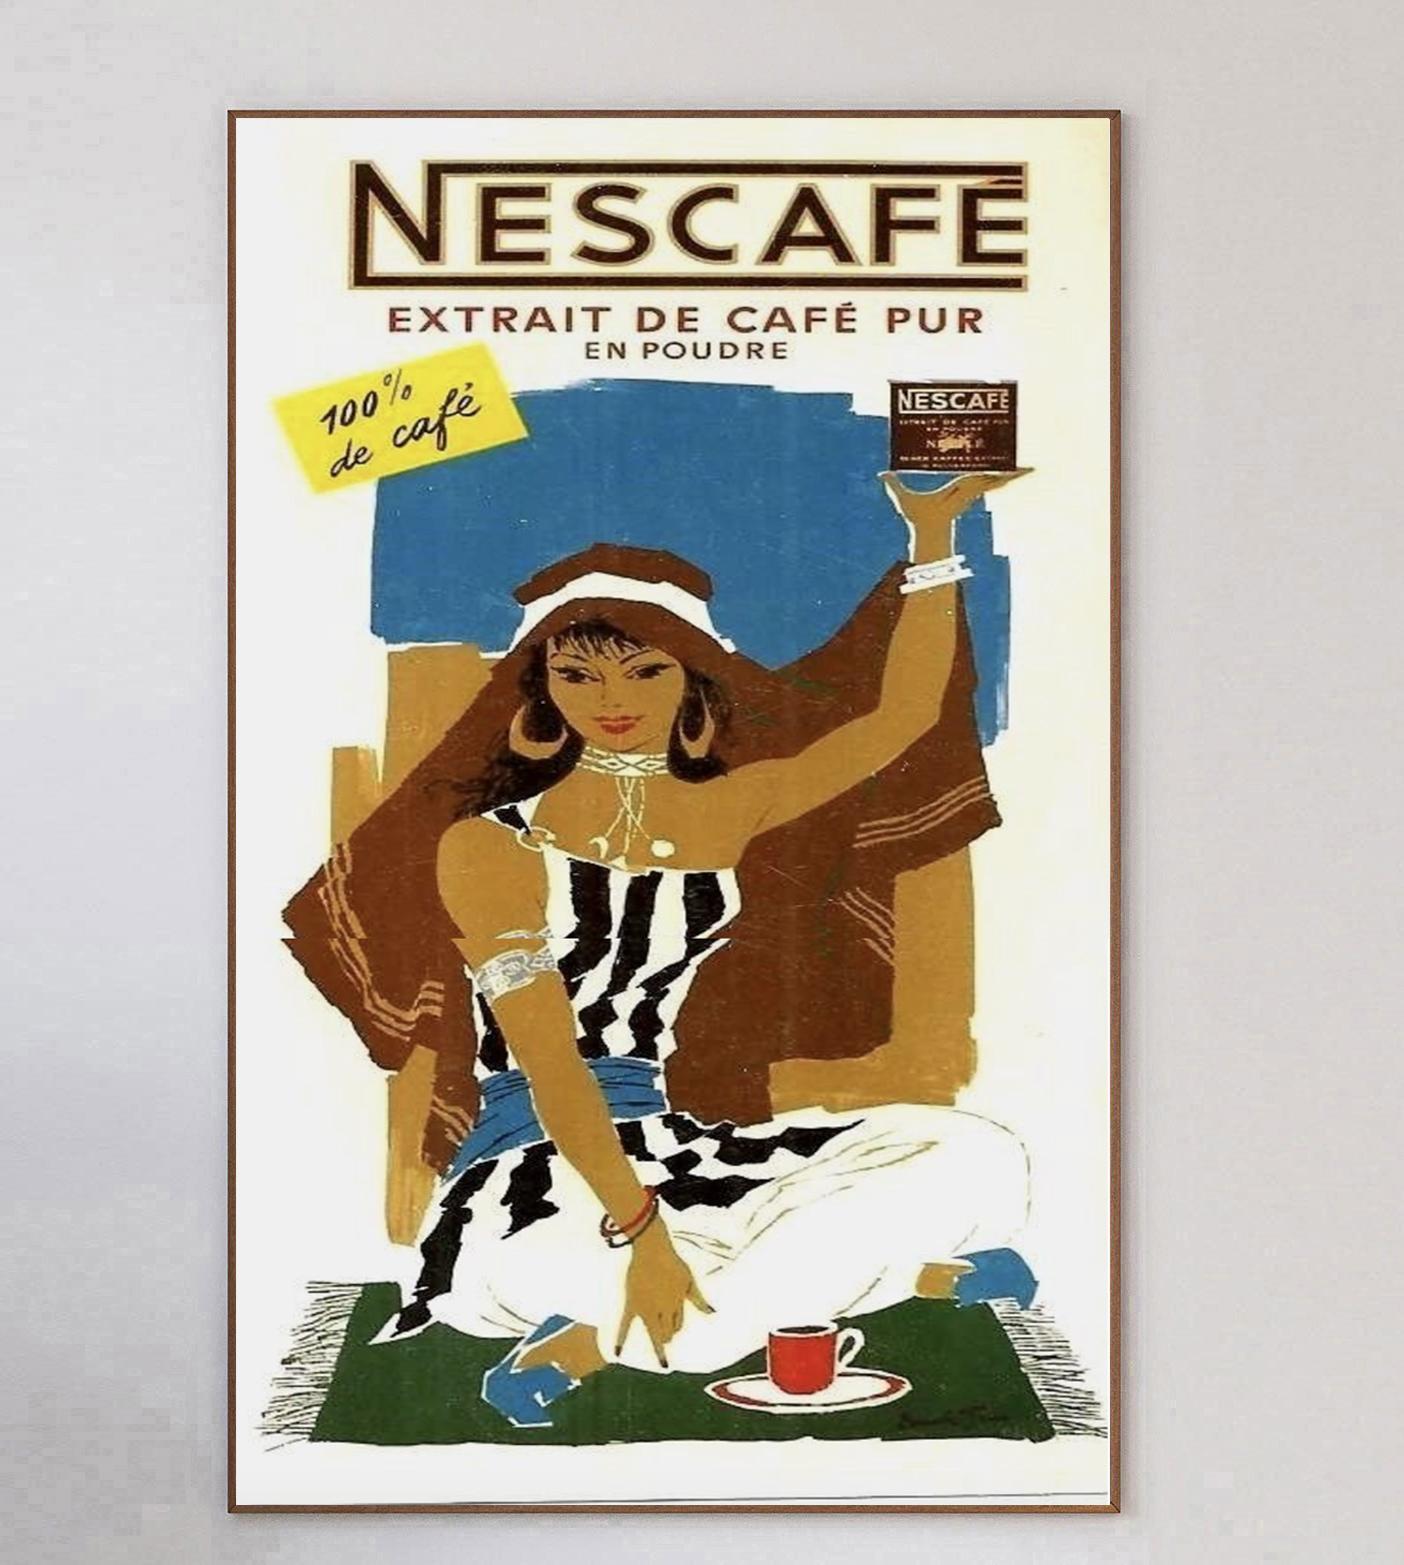 Cette magnifique affiche a été créée en 1960 pour promouvoir Nescafe. Elle est l'œuvre du graphiste suisse Donald Brun et représente une femme assise en train de déguster un café. Nescafe, qui a vu le jour en Suisse en 1938, est la marque de café